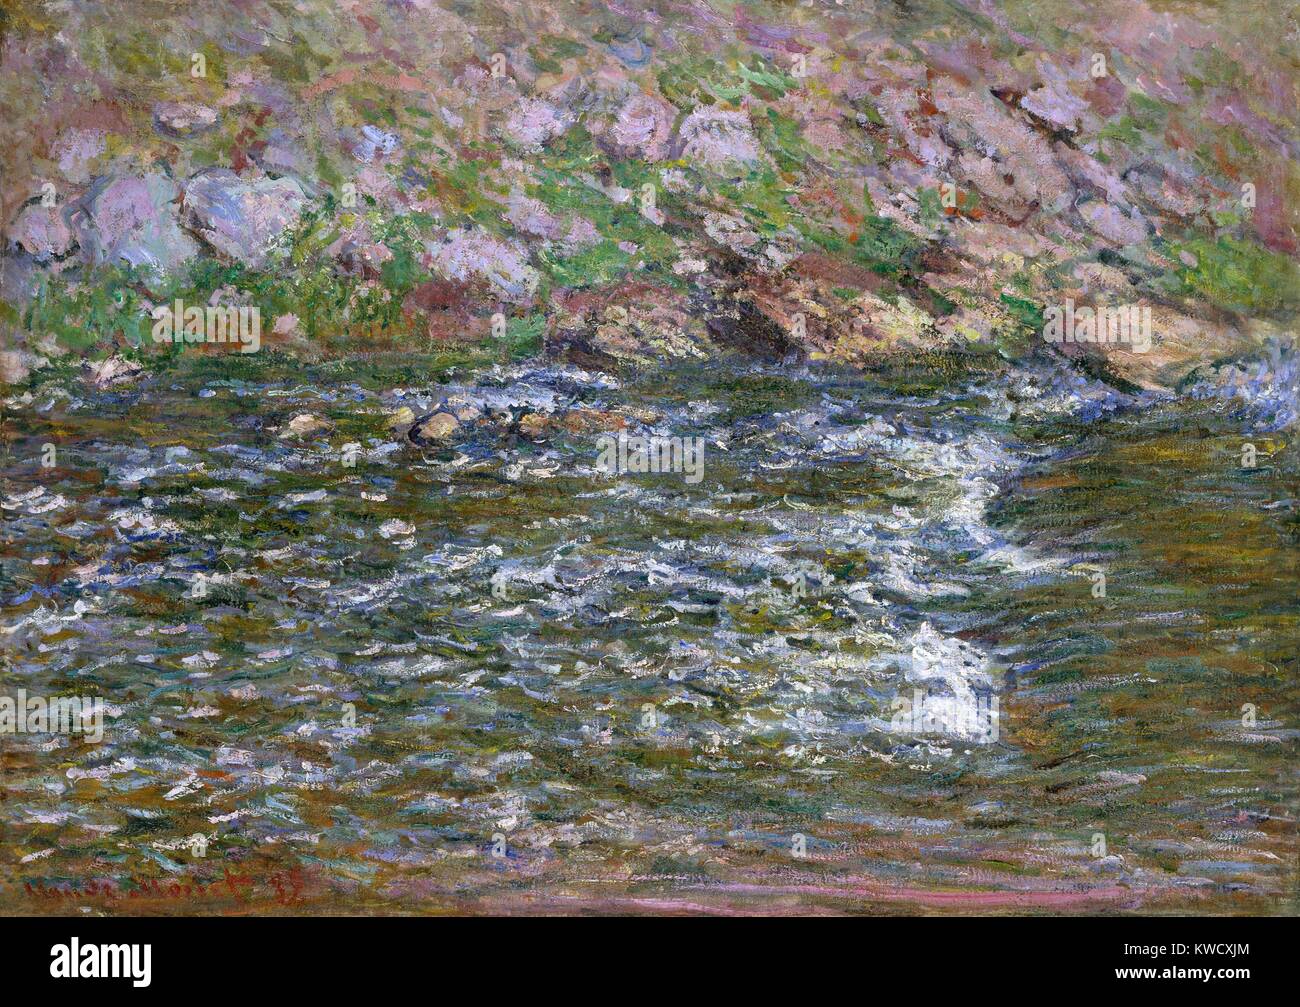 Rapids auf dem Petite Creuse Binz, von Claude Monet, 1889, französischer Impressionisten Öl Malerei. Monet malte die schäumenden Stromschnellen, weich fließendes Wasser und Felsen und Gras am Flussufer (BSLOC 2017 3 40) Stockfoto